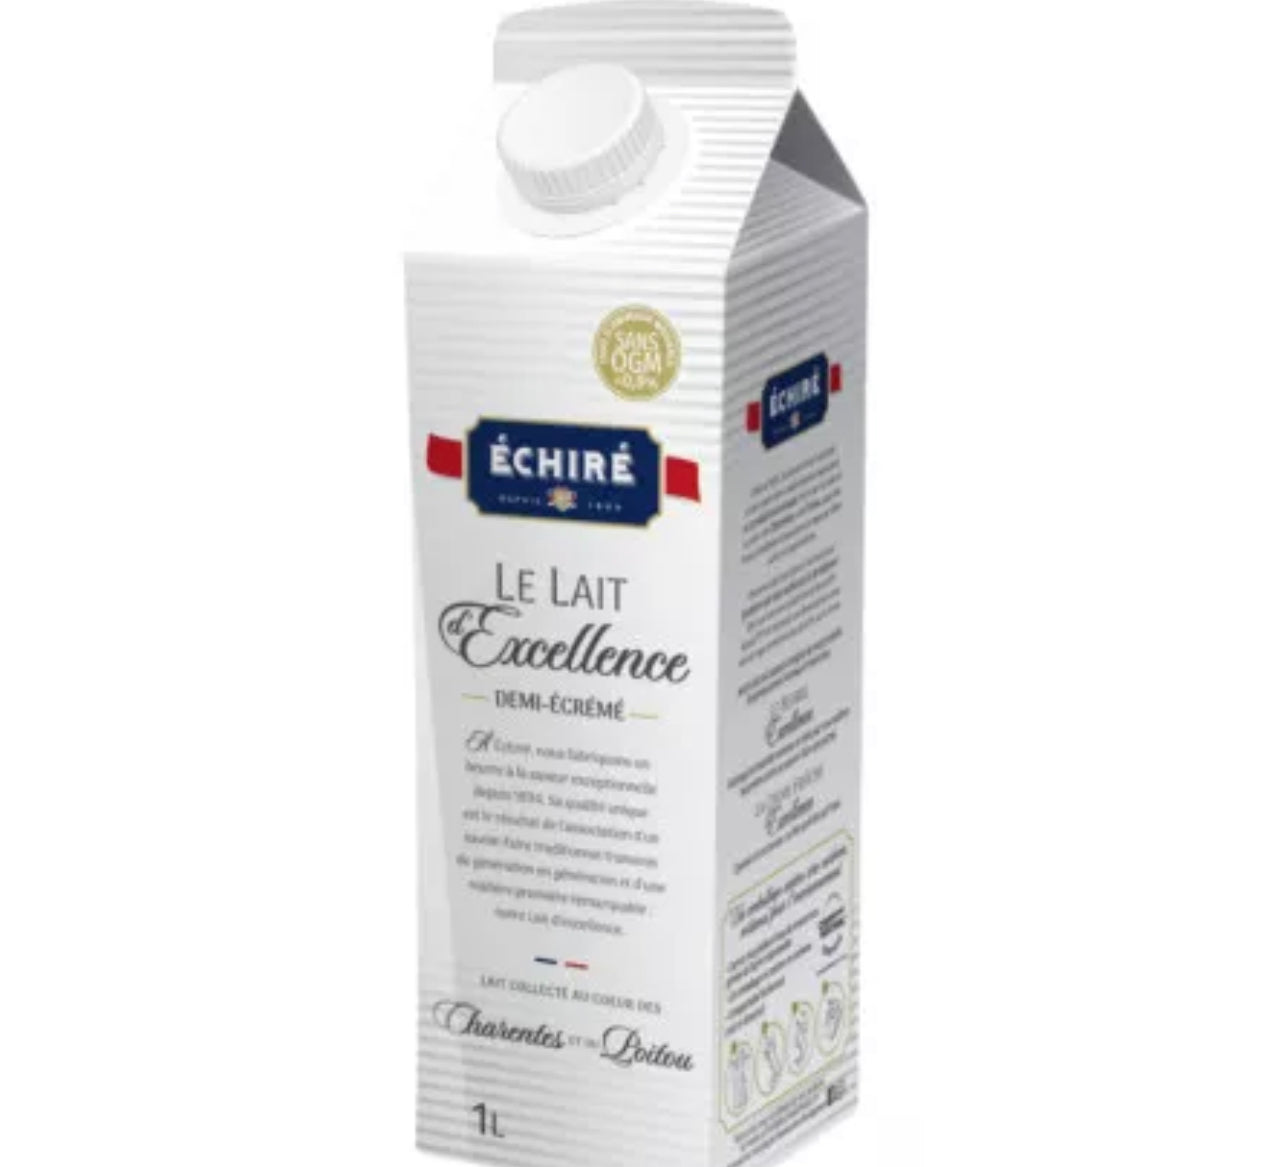 UHT semi-skimmed milk - Le Lait d'Excellence - 1L